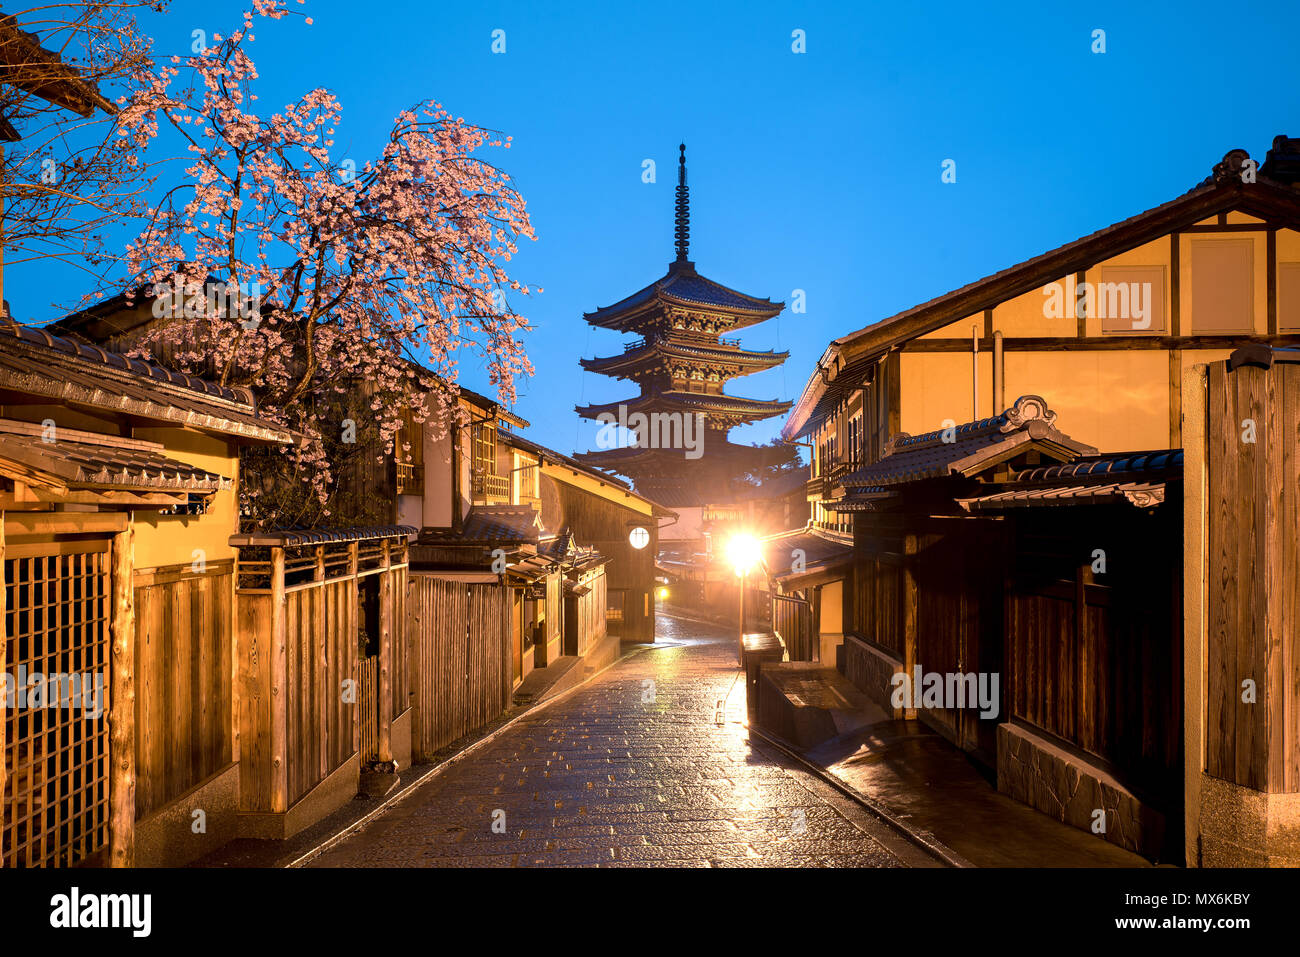 La pagoda giapponese e la vecchia casa con la fioritura dei ciliegi a Kyoto al crepuscolo. Foto Stock